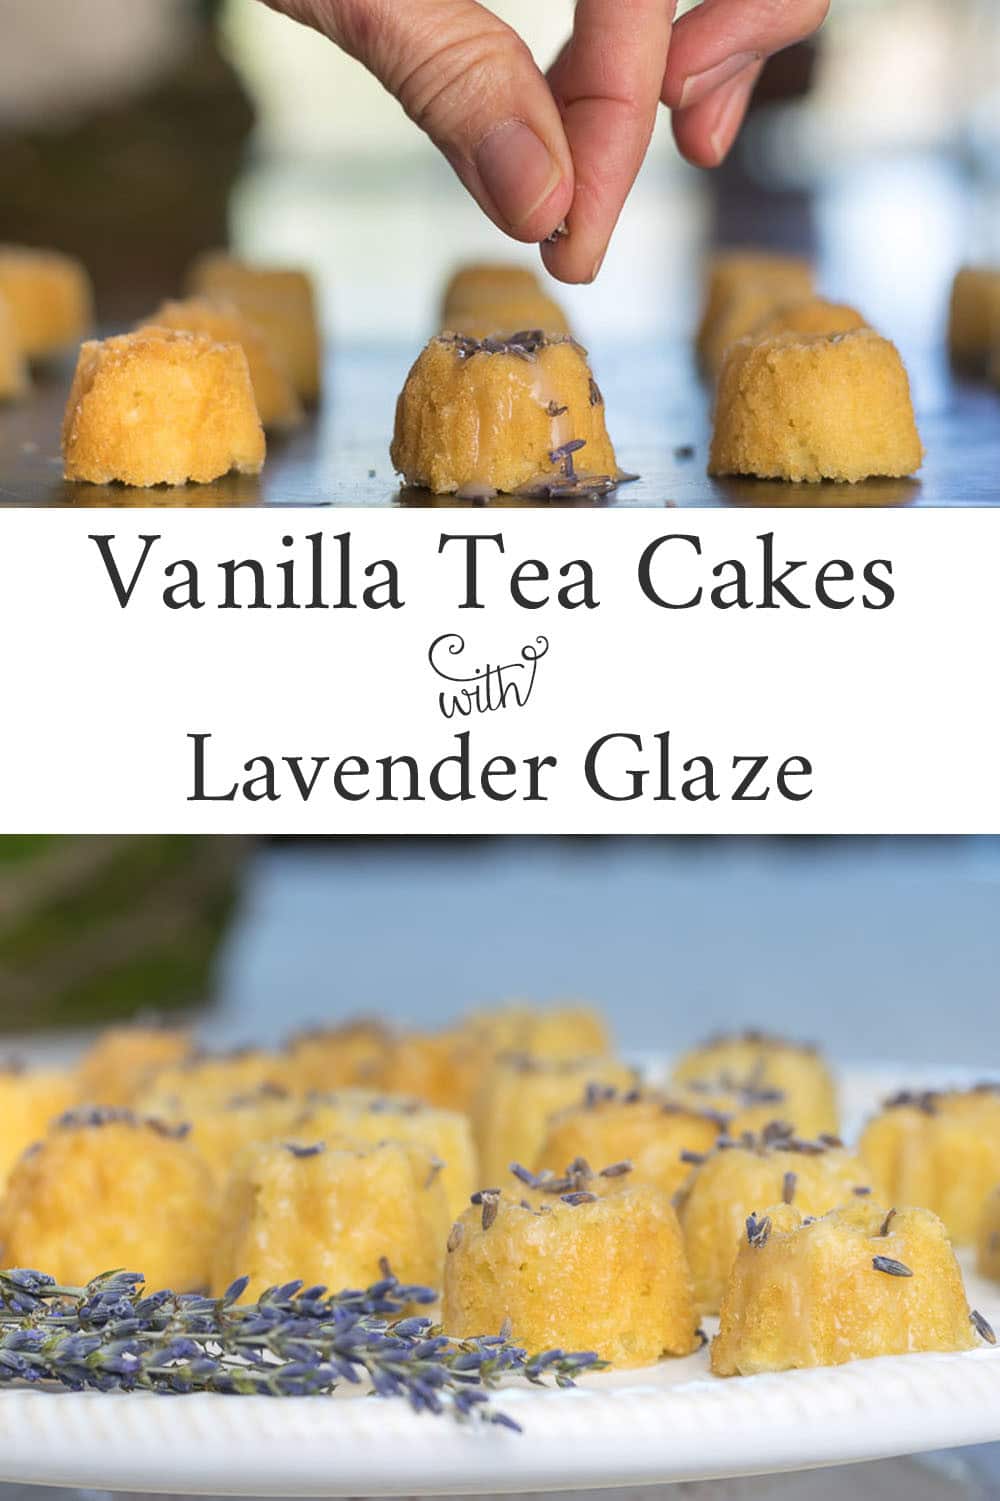 Sprinkling lavender buds over tea cakes